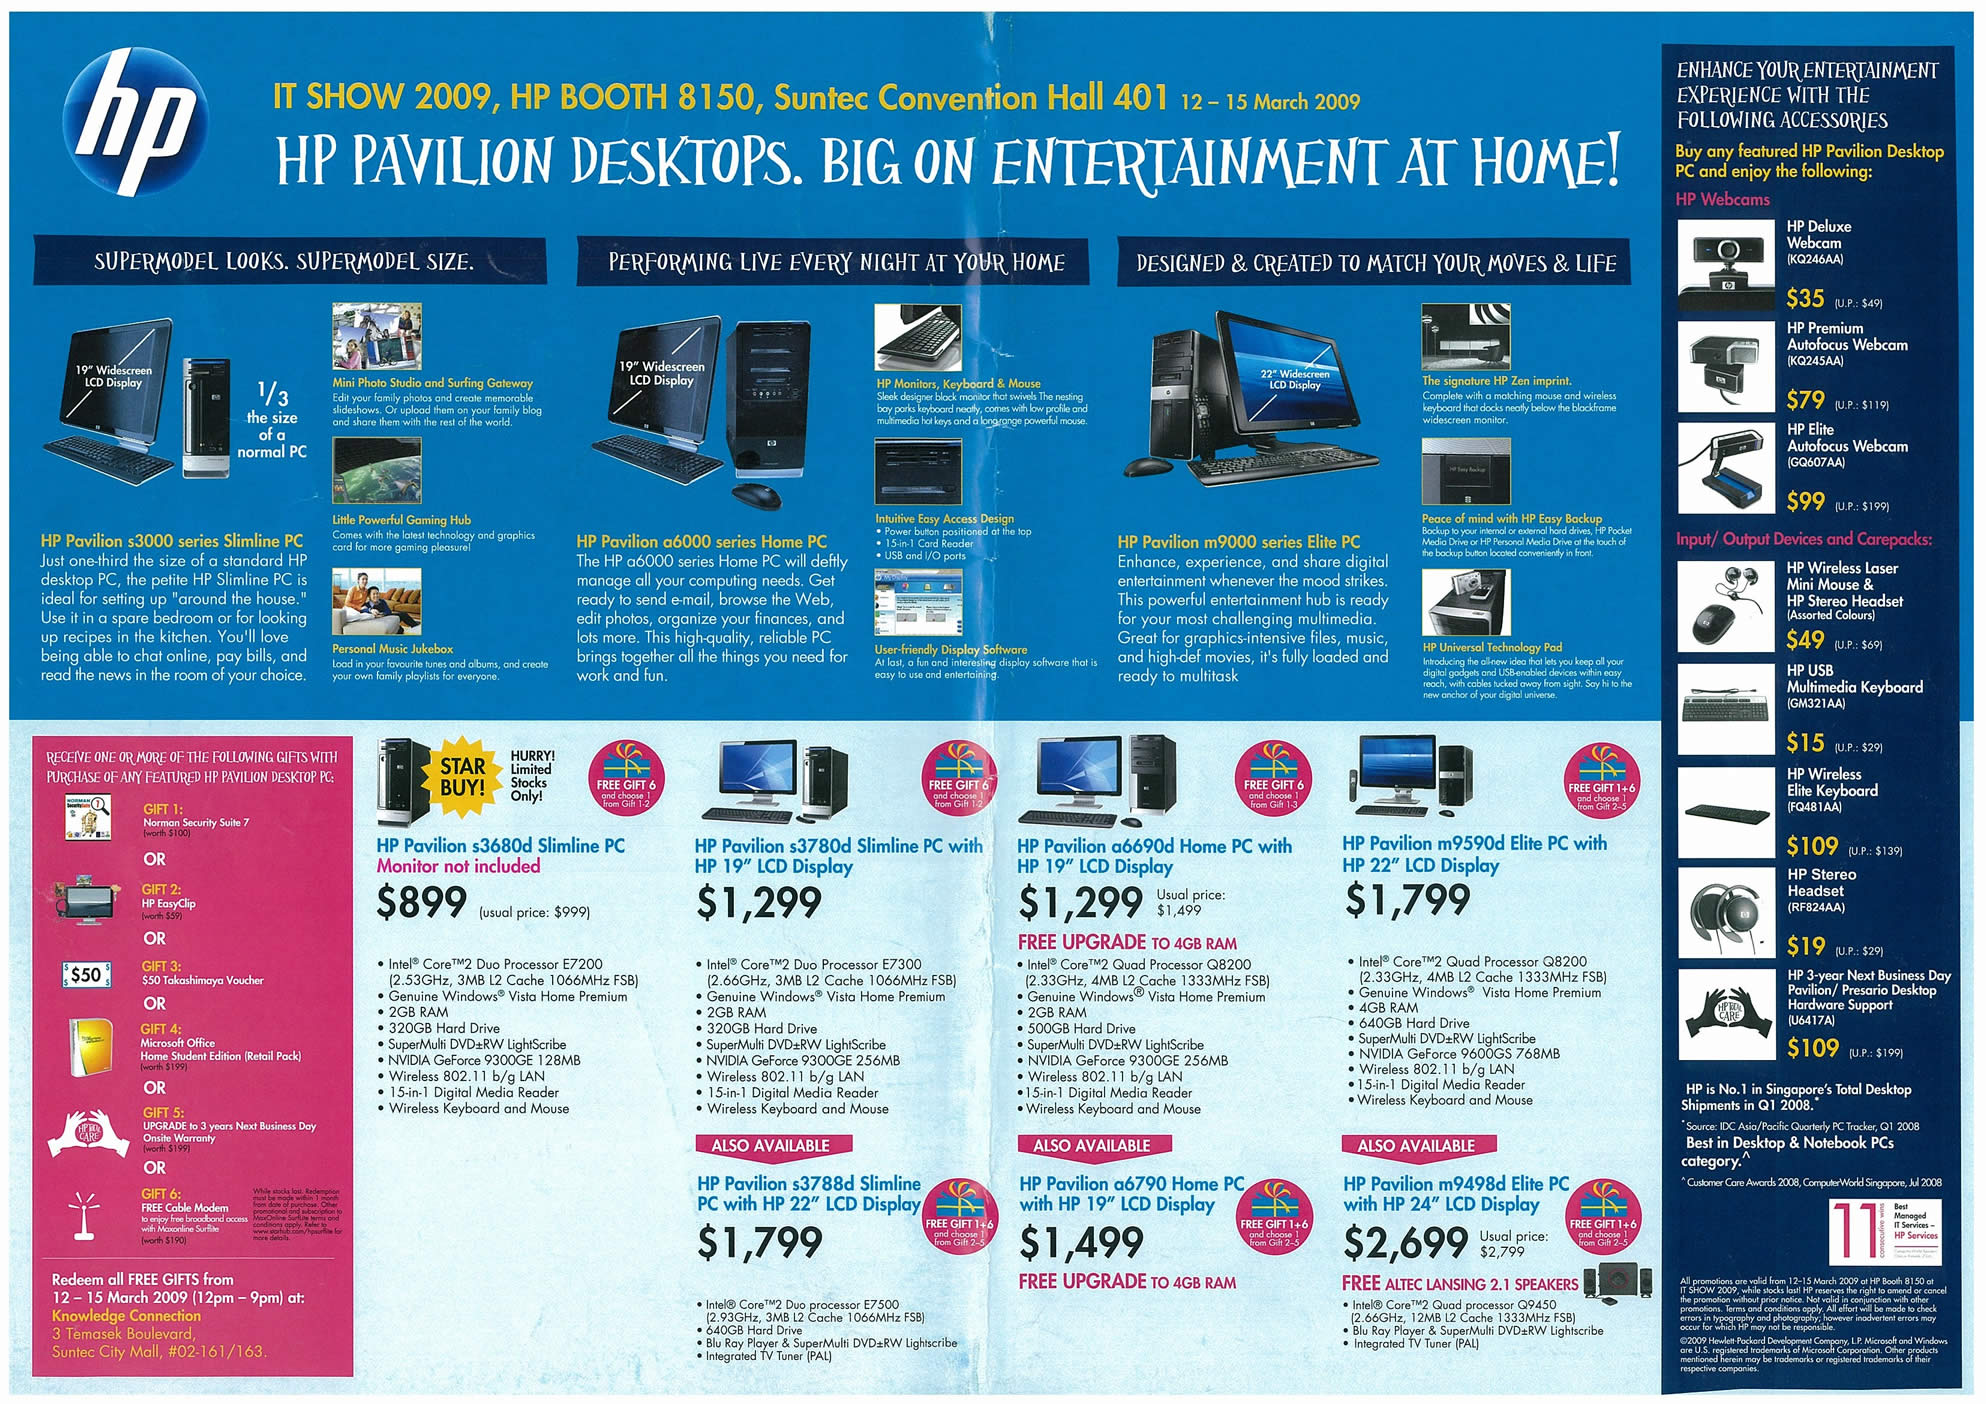 IT Show 2009 price list image brochure of HP Pavilion Desktops (tclong)